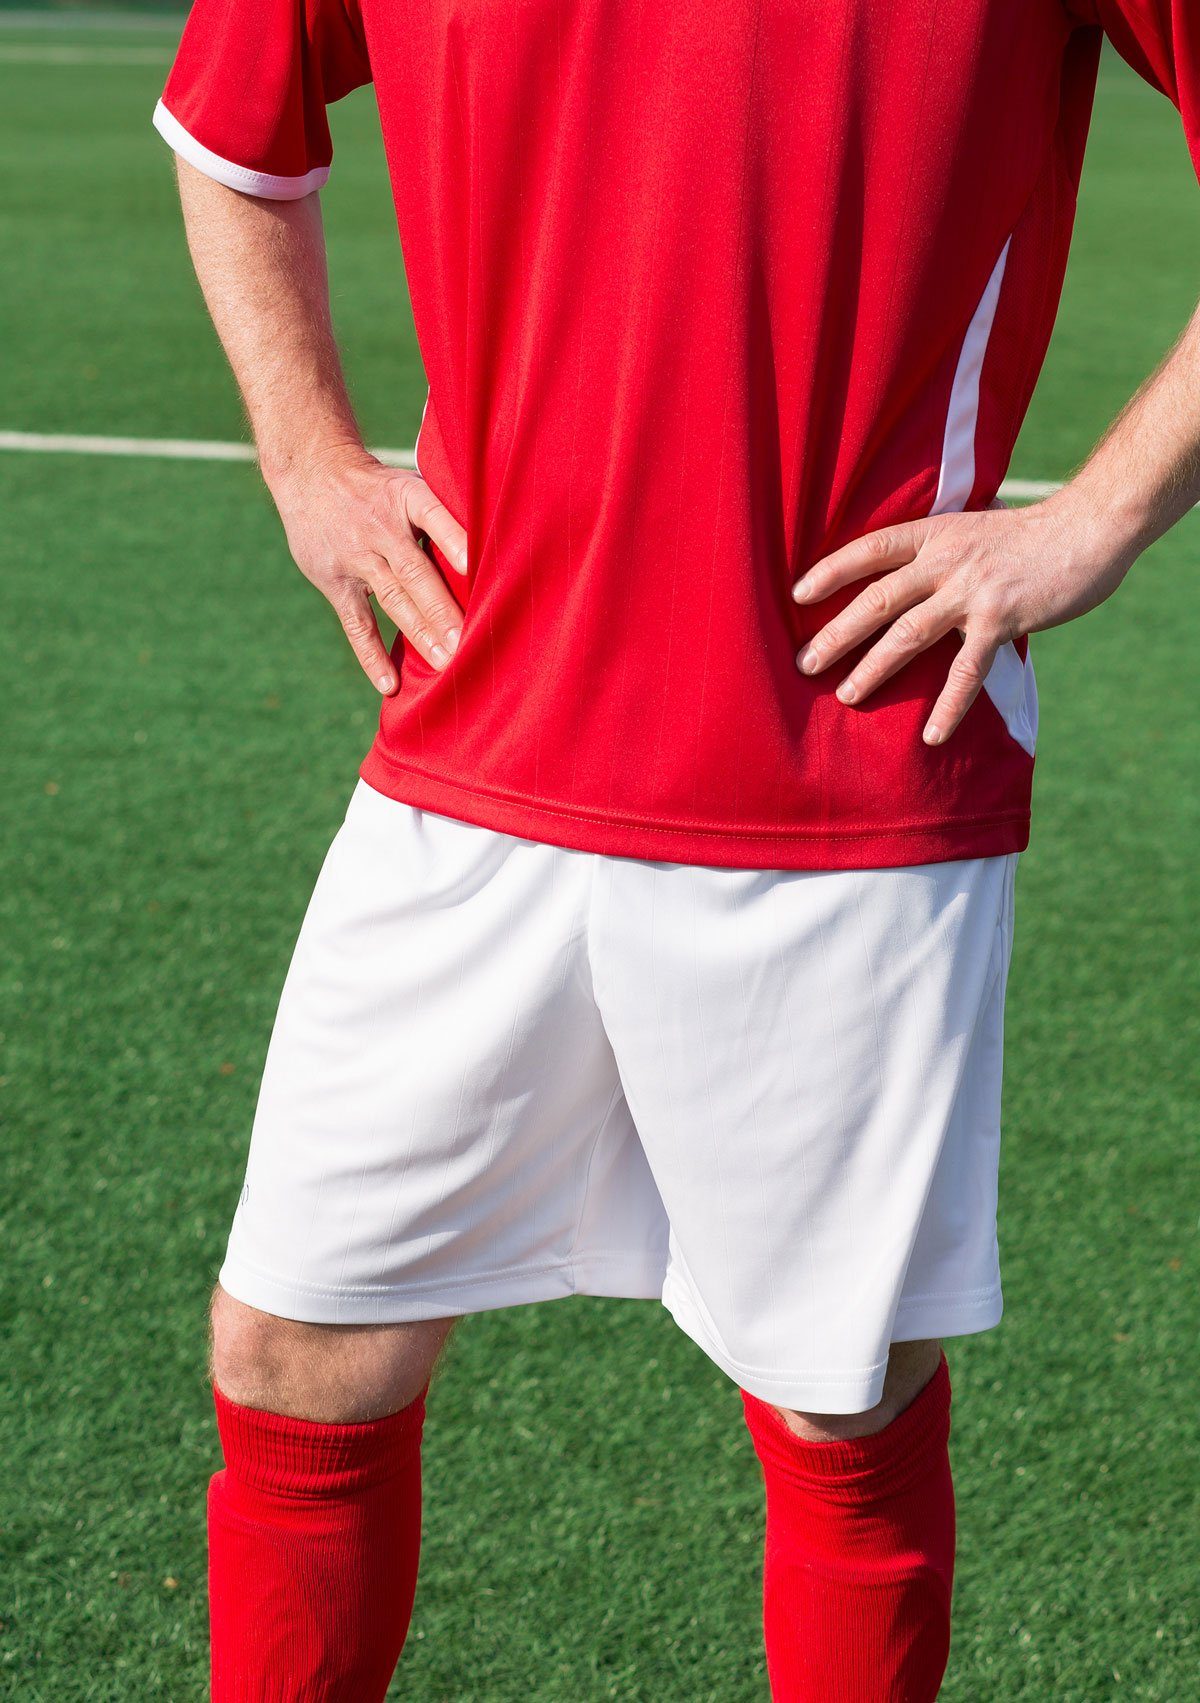 Sportswear Mesheinsätze kurzarm Fußballtrikot Fußballtrikot Levante zweifarbig Trikot Fußball rot/schwarz seitliche Geco